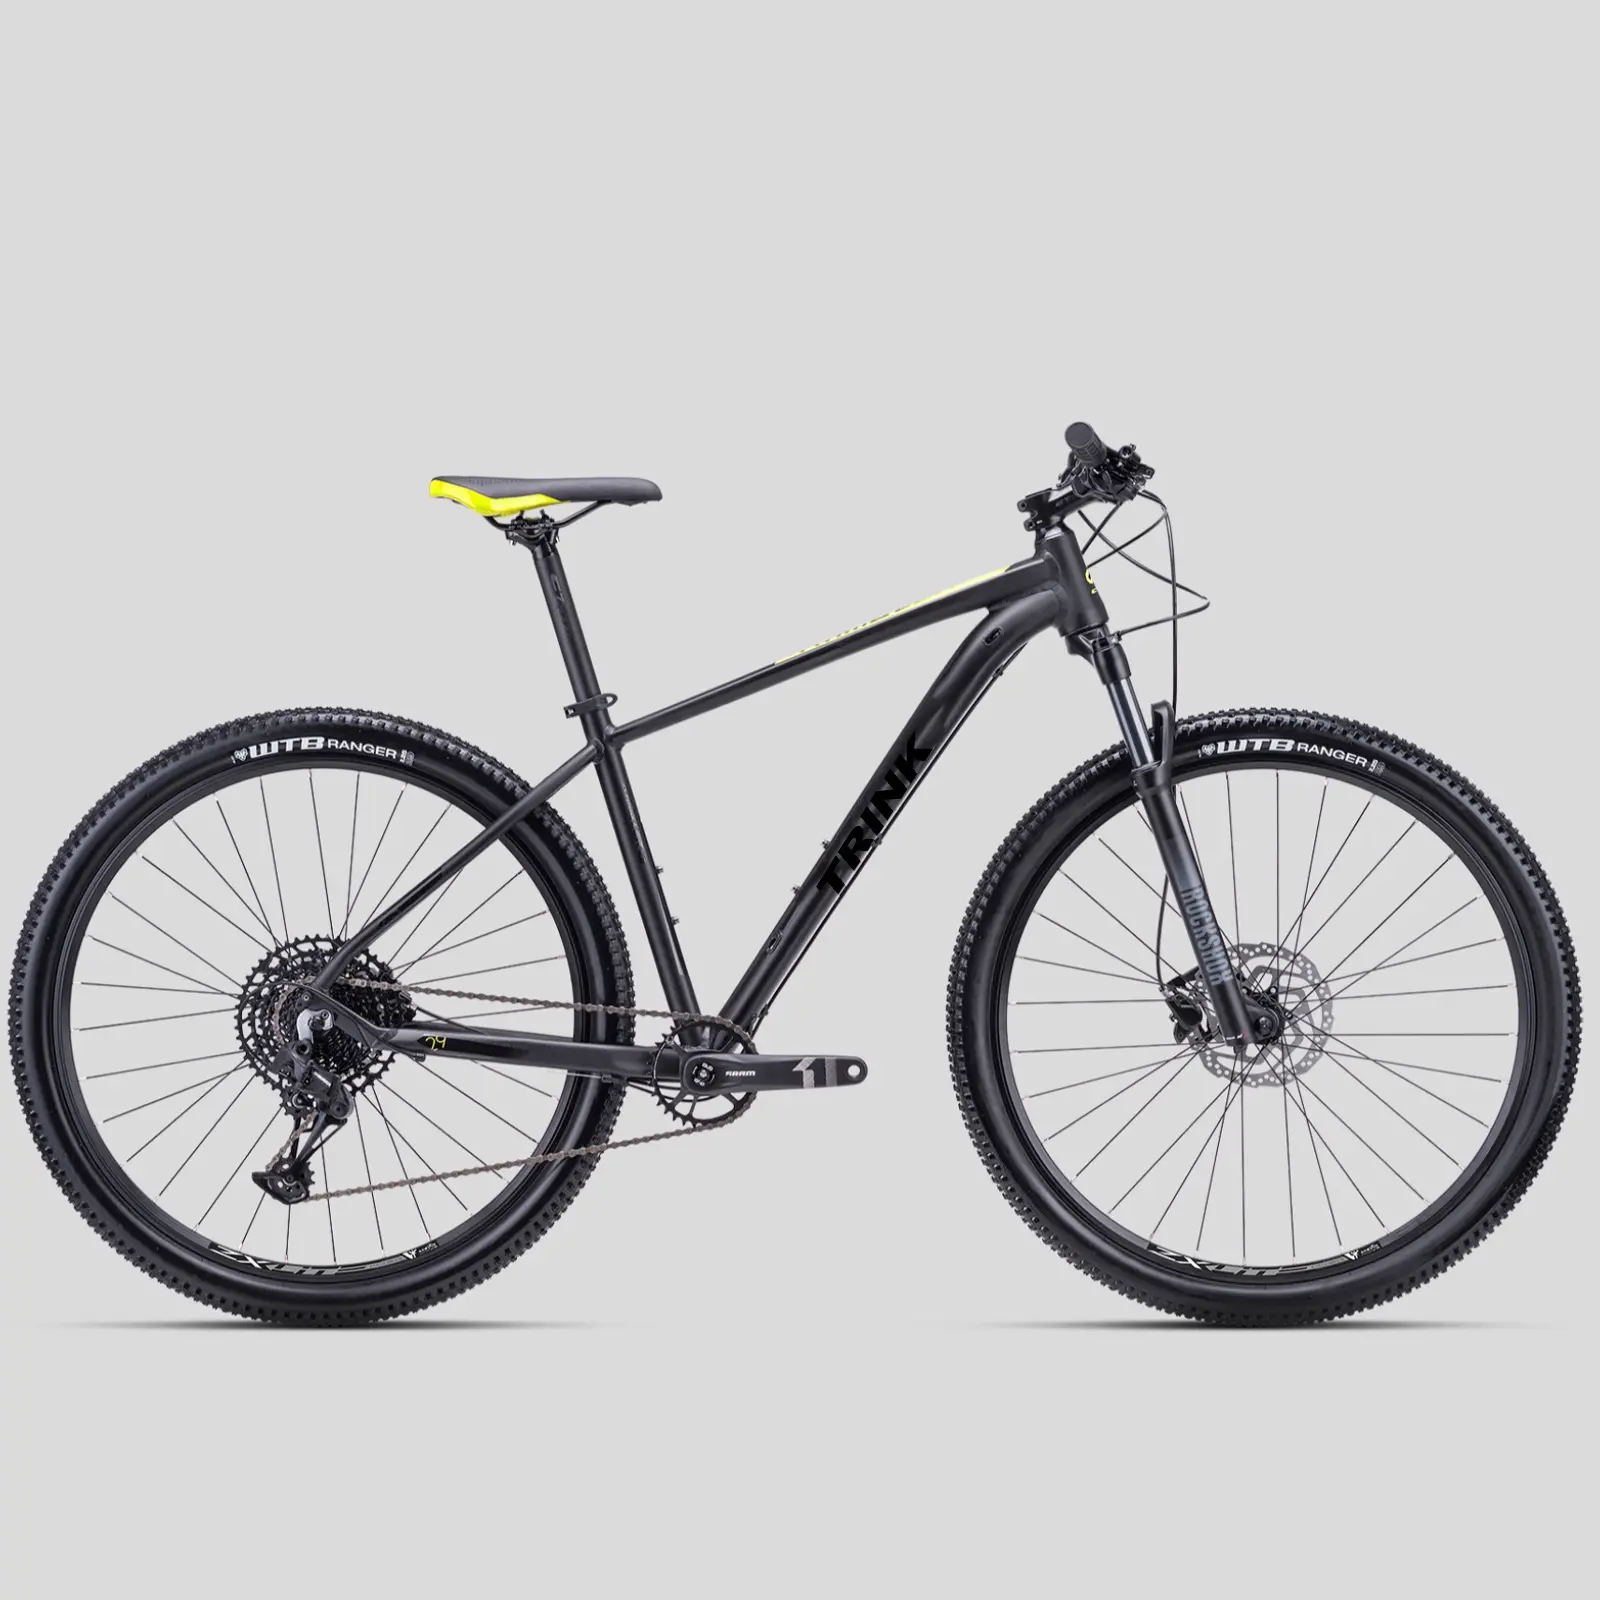 Bicicleta de montana benotto/산악 자전거 27.5/더블 디스크 브레이크 산악 자전거 도매